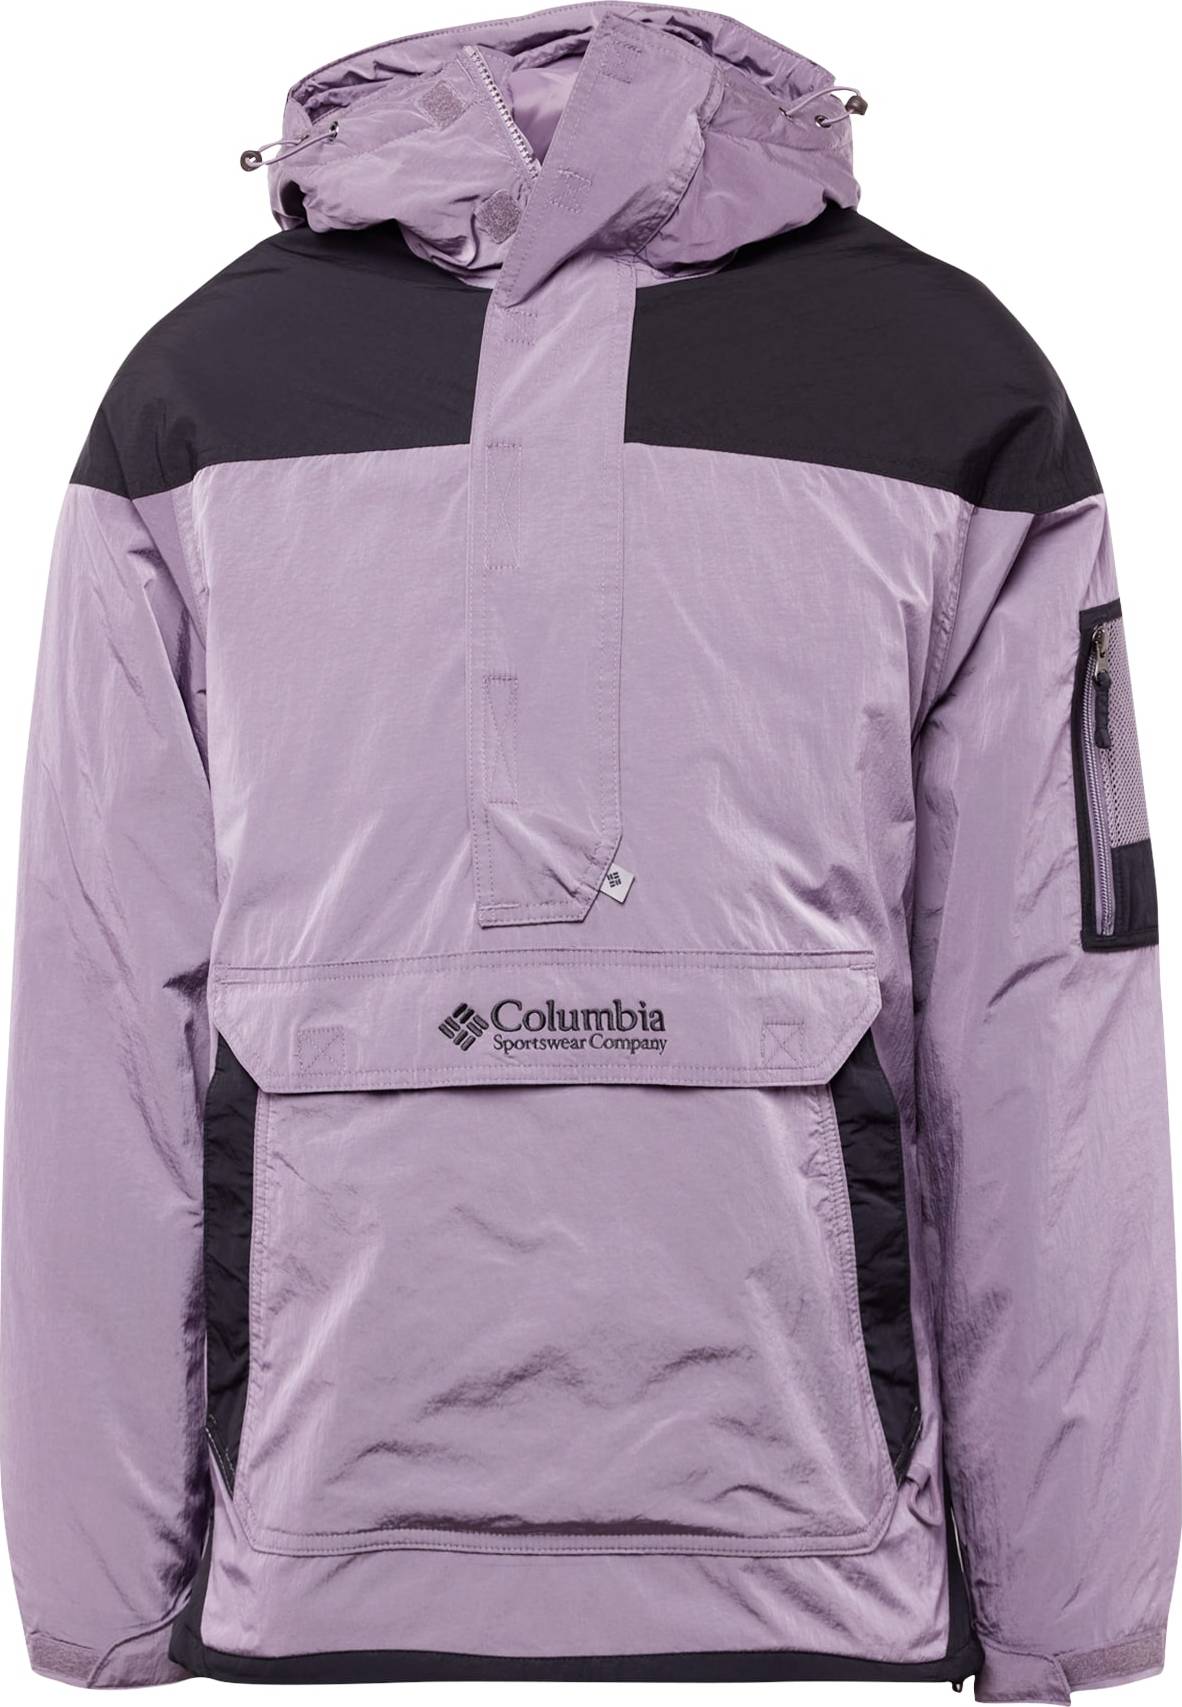 Outdoorová bunda Columbia světle fialová / černá